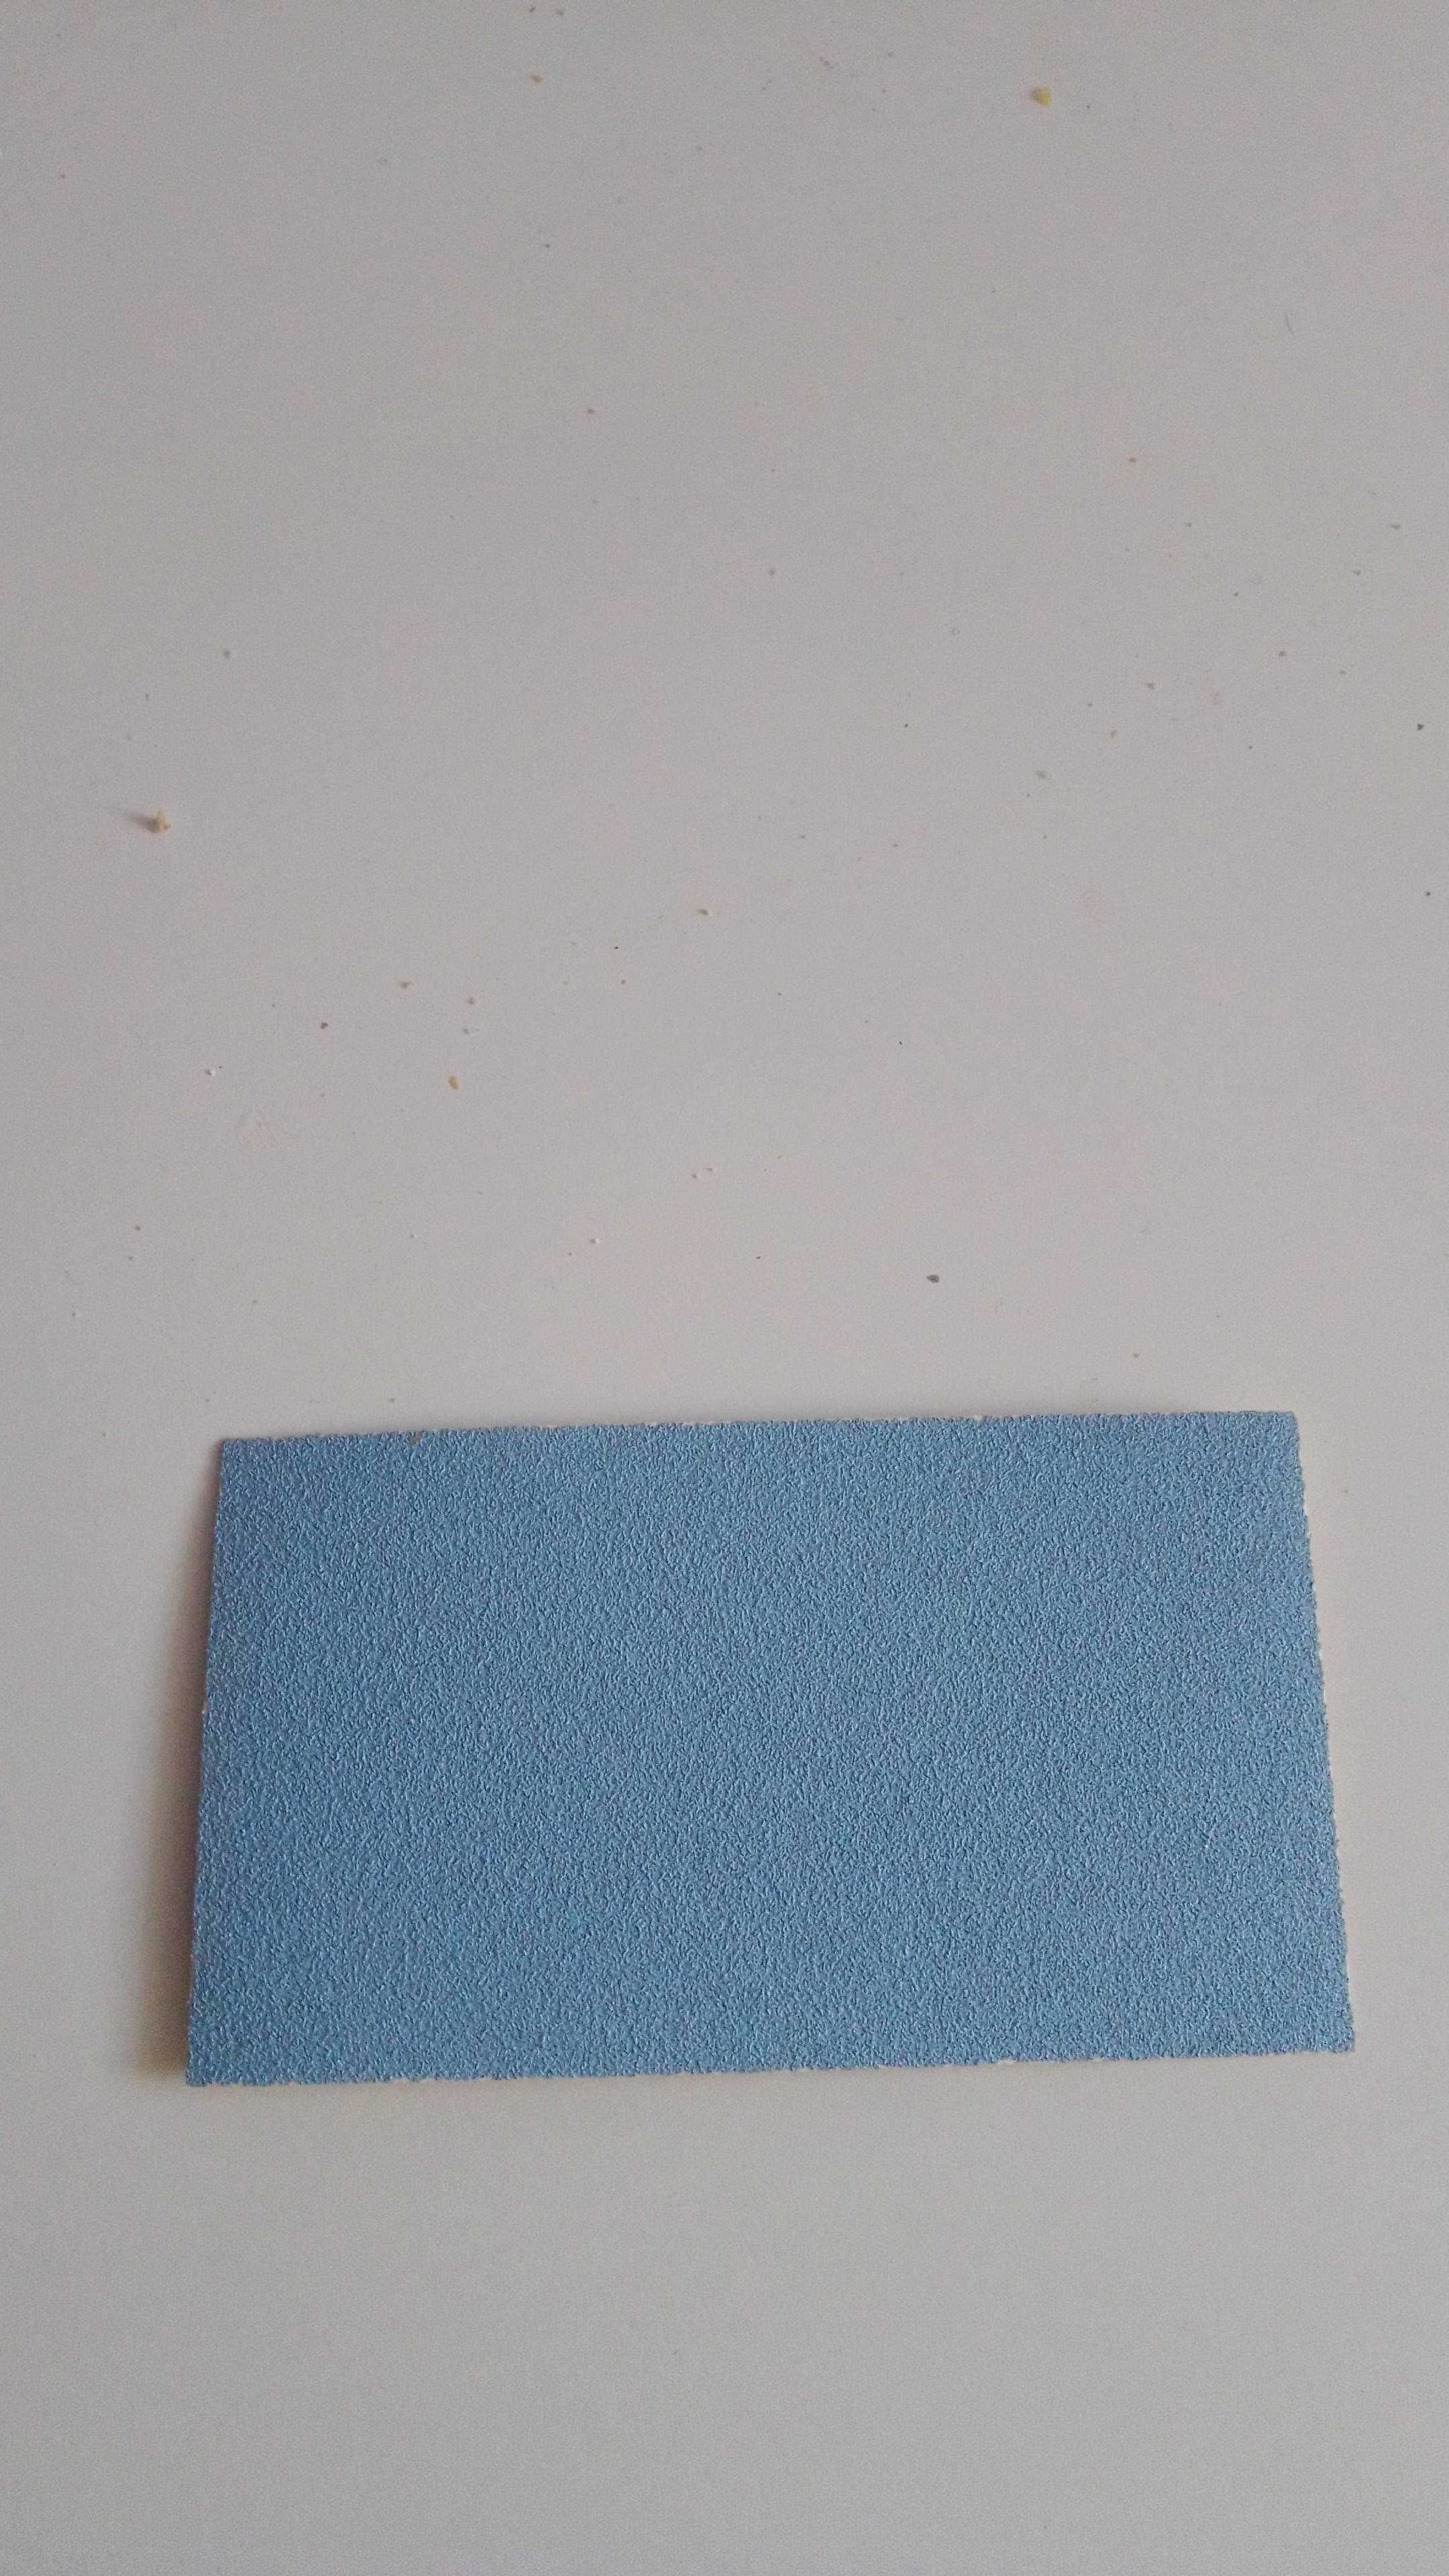 szwajcarski papier ścierny na rzep firmy SIAFAST   tanio wyprzedaż